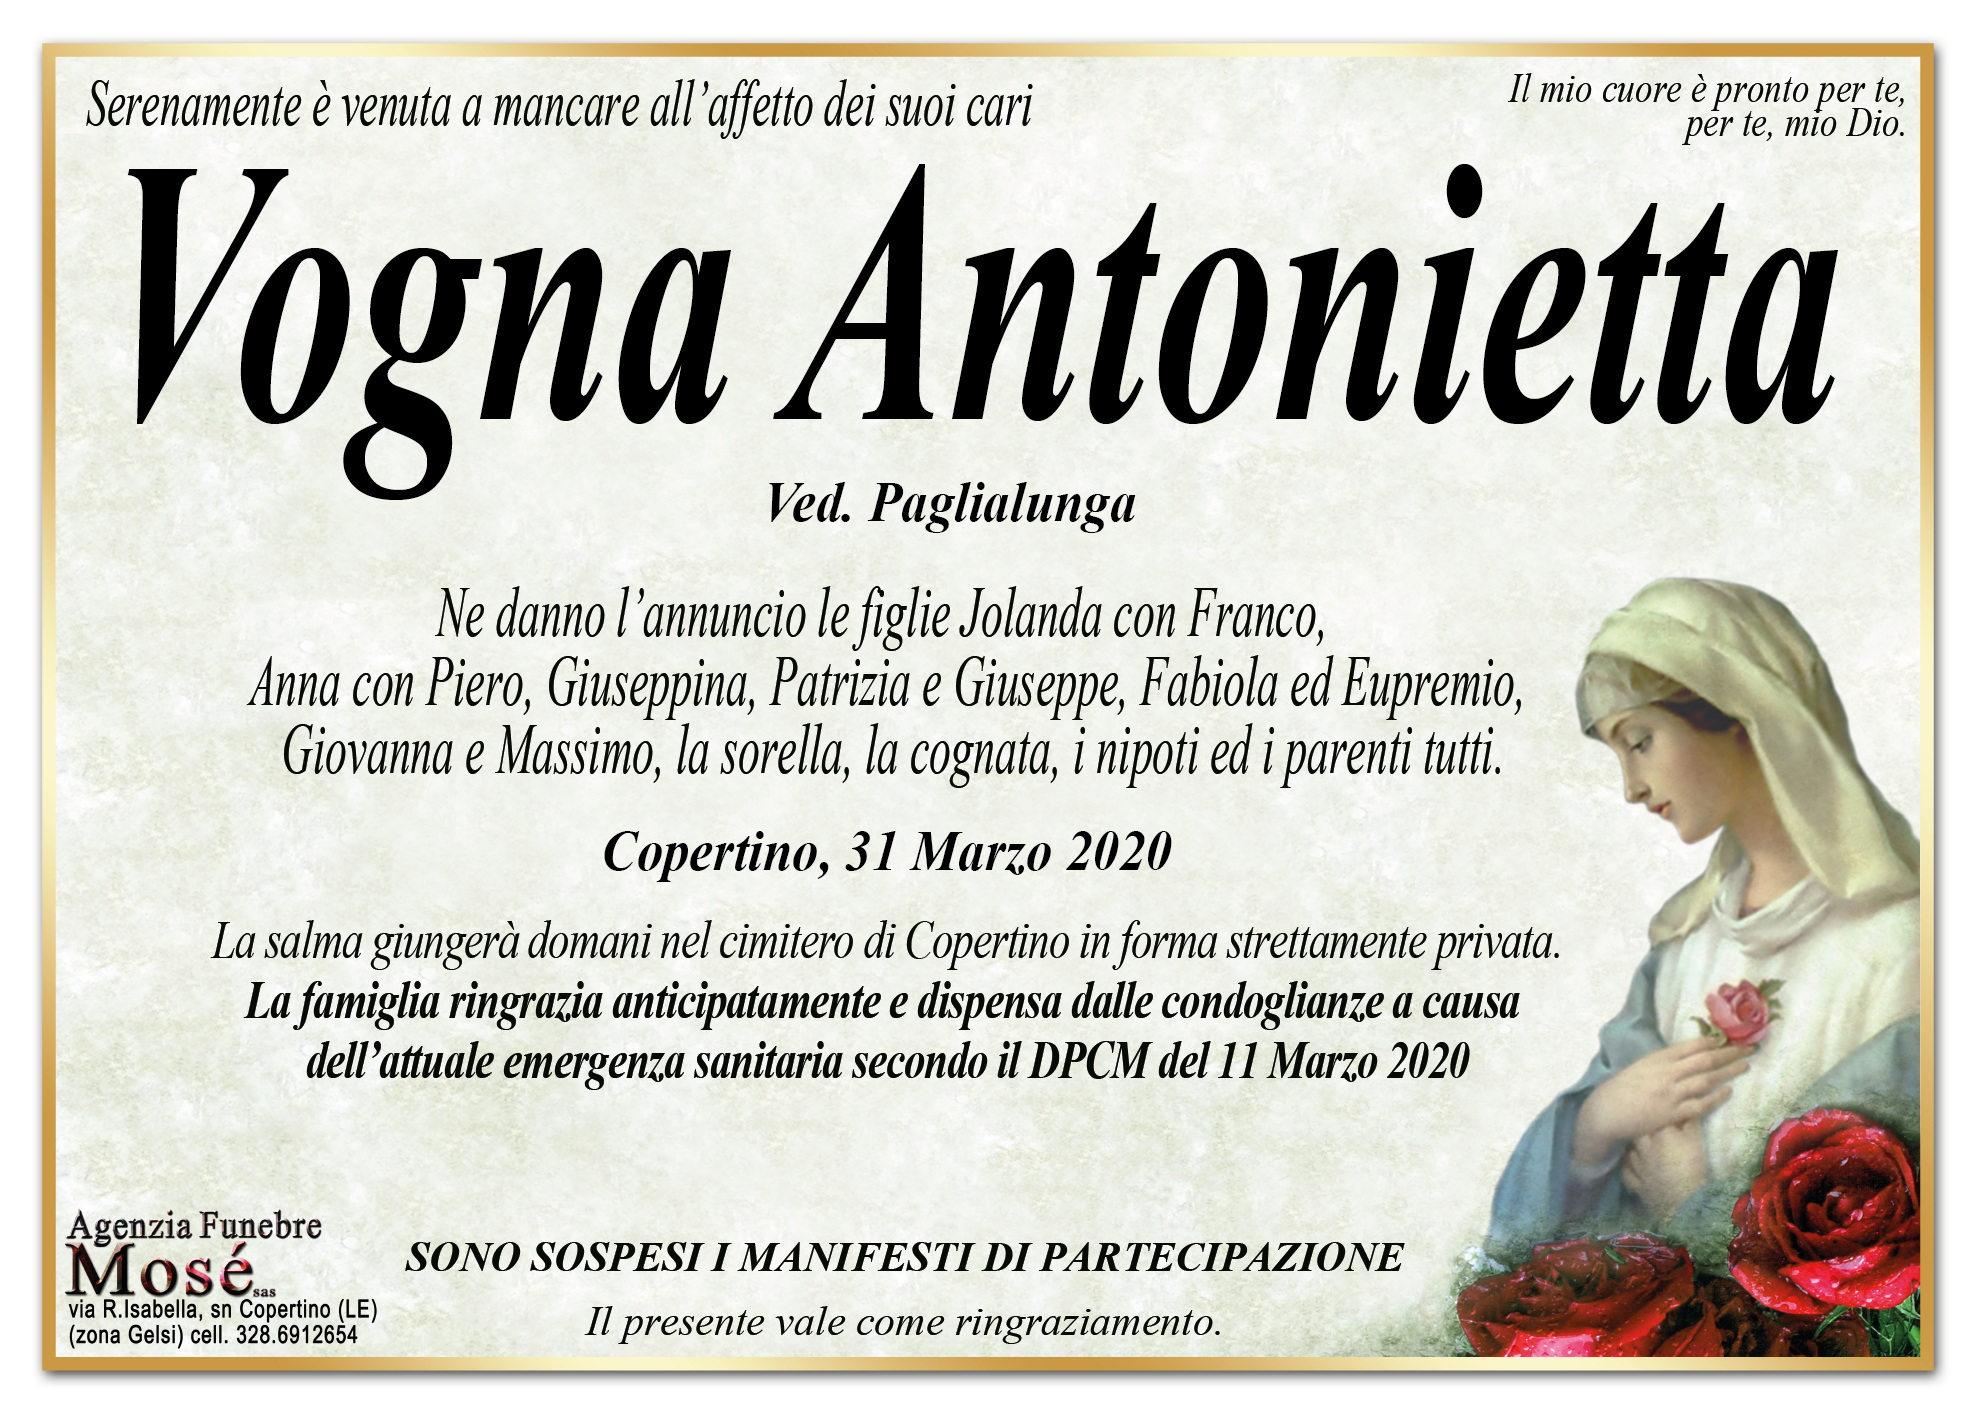 Antonietta Vogna